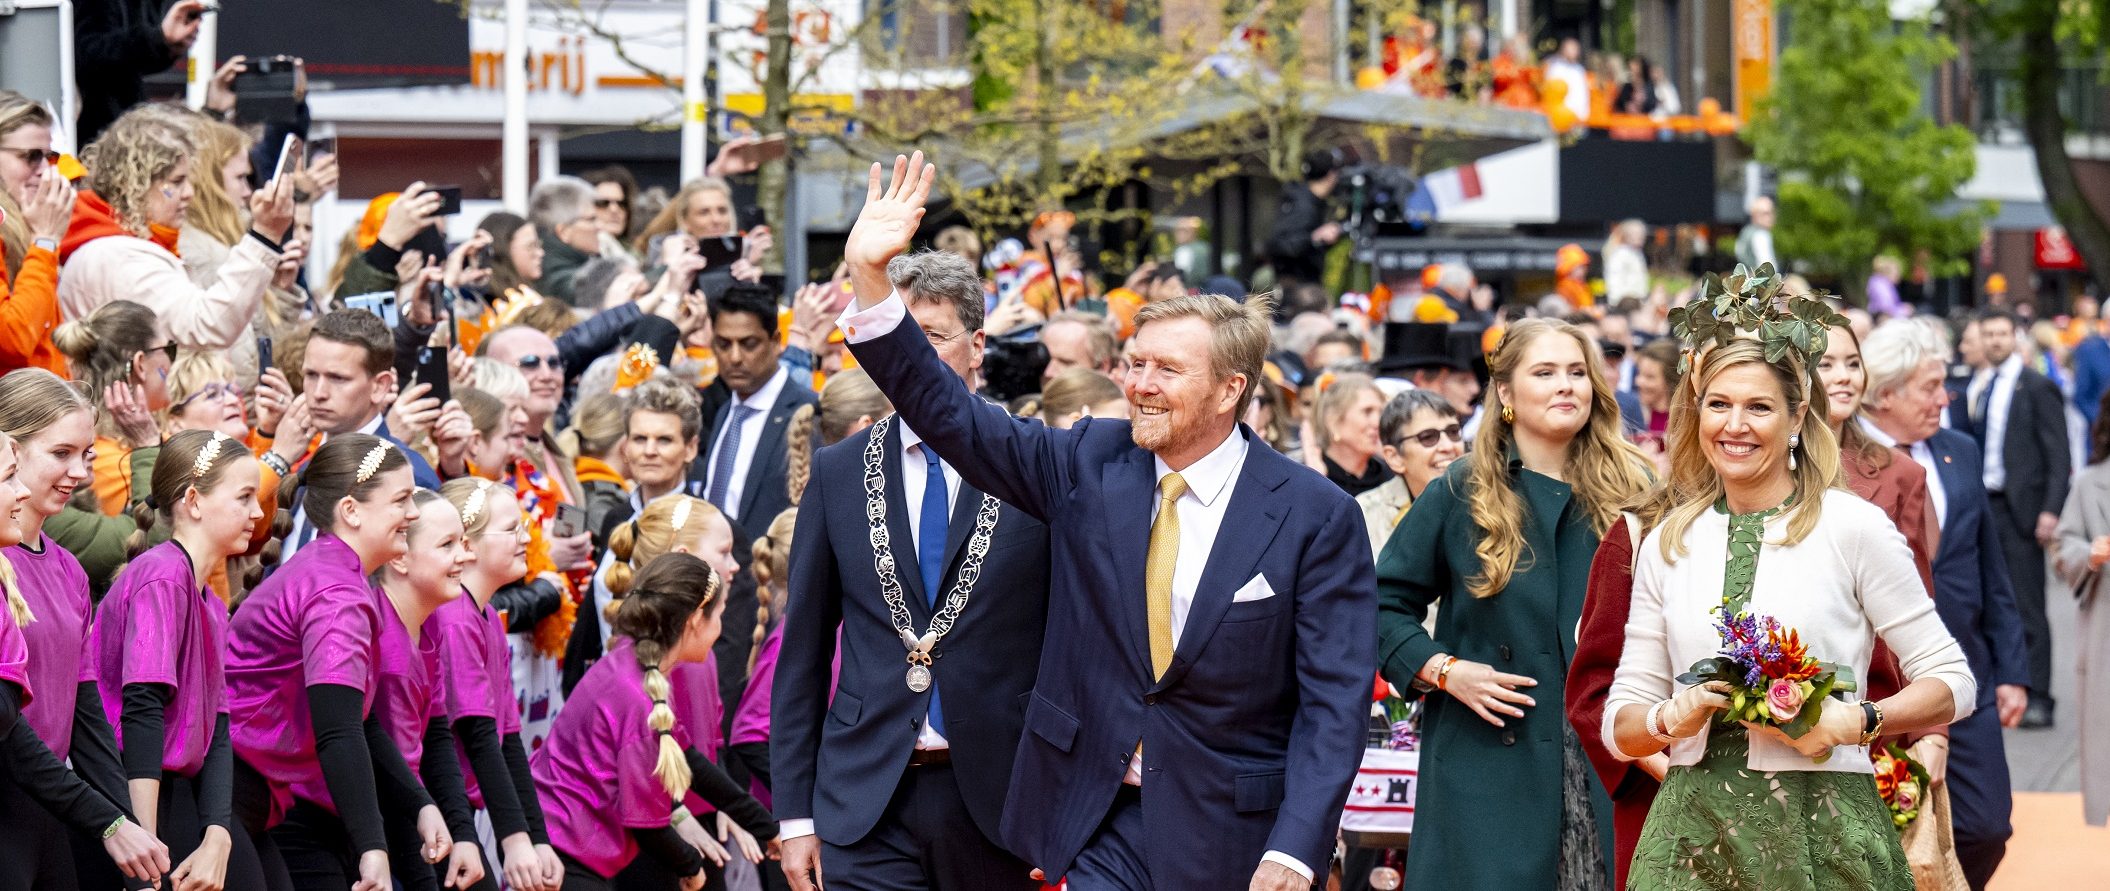 Koninklijke familie loopt over oranje loper langs de dansers.